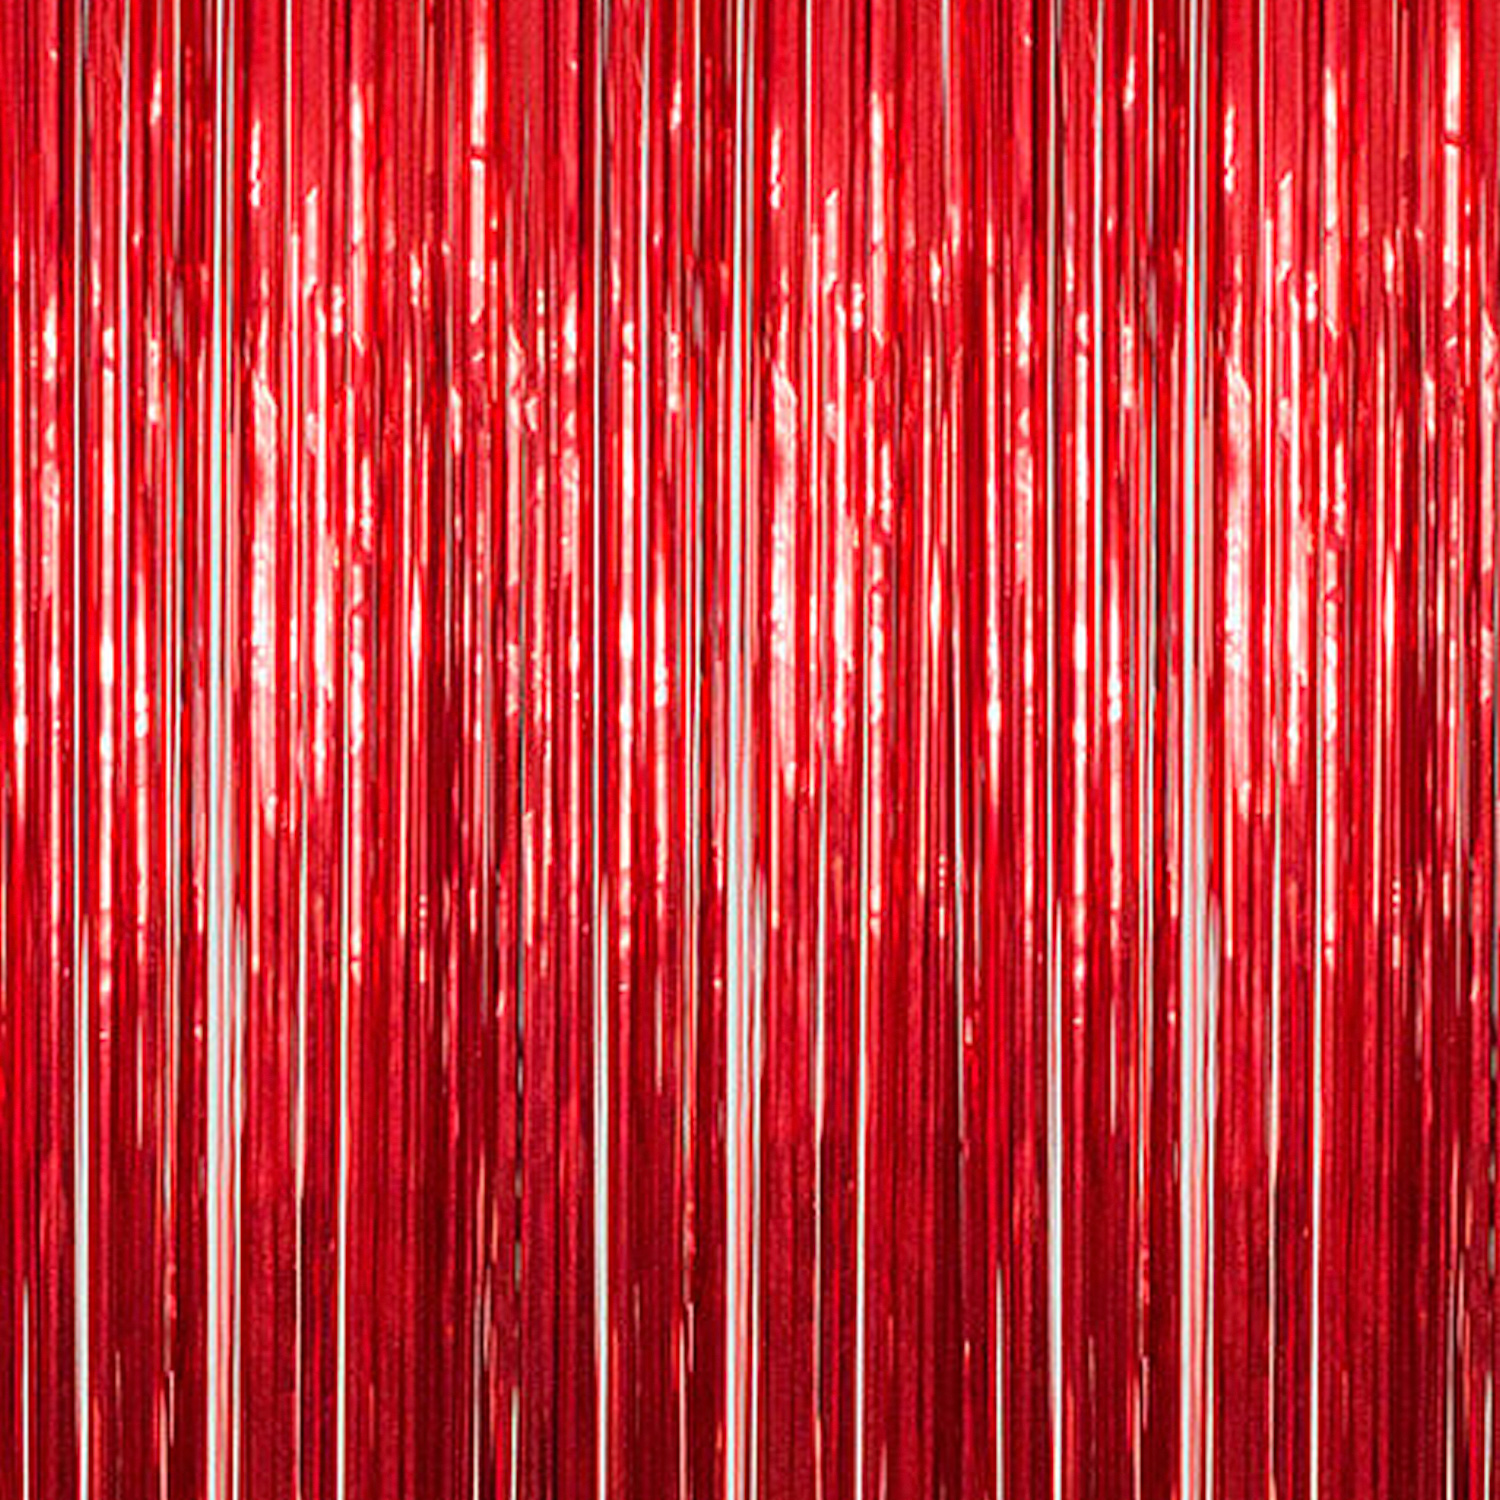 Red - Metallic Fringe Curtain - Many Size Options